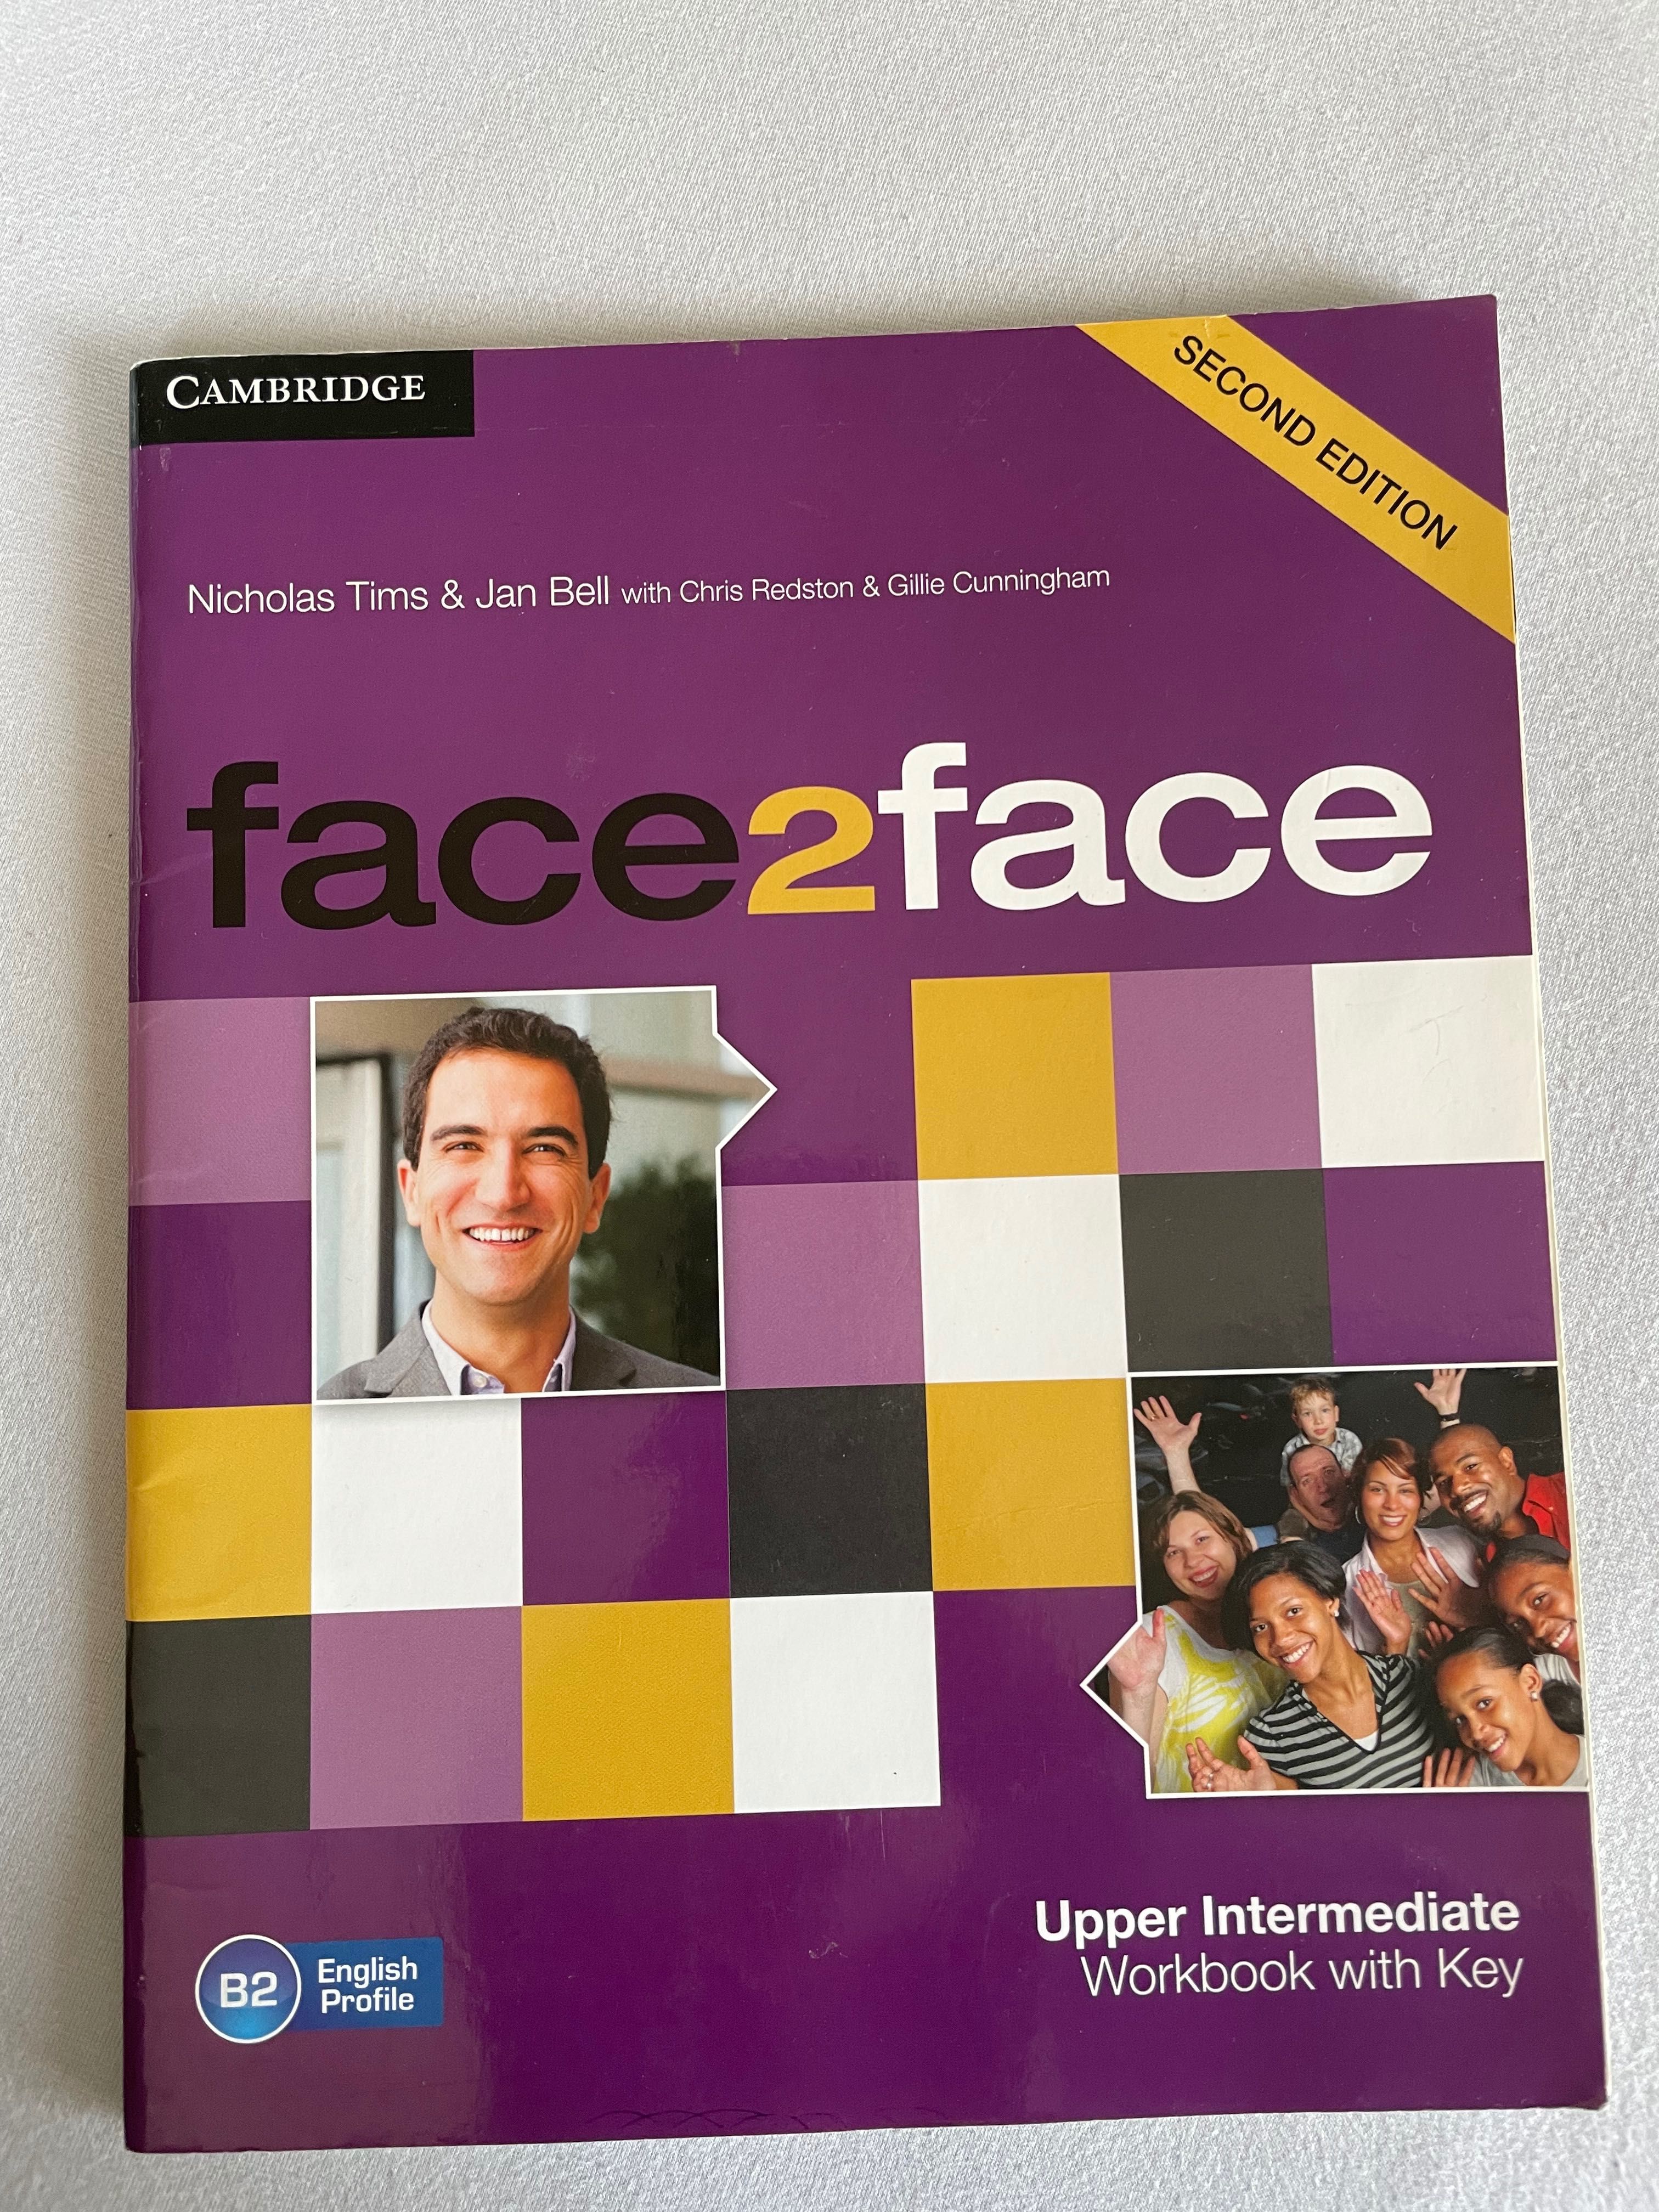 Face2face książki do angielskiego